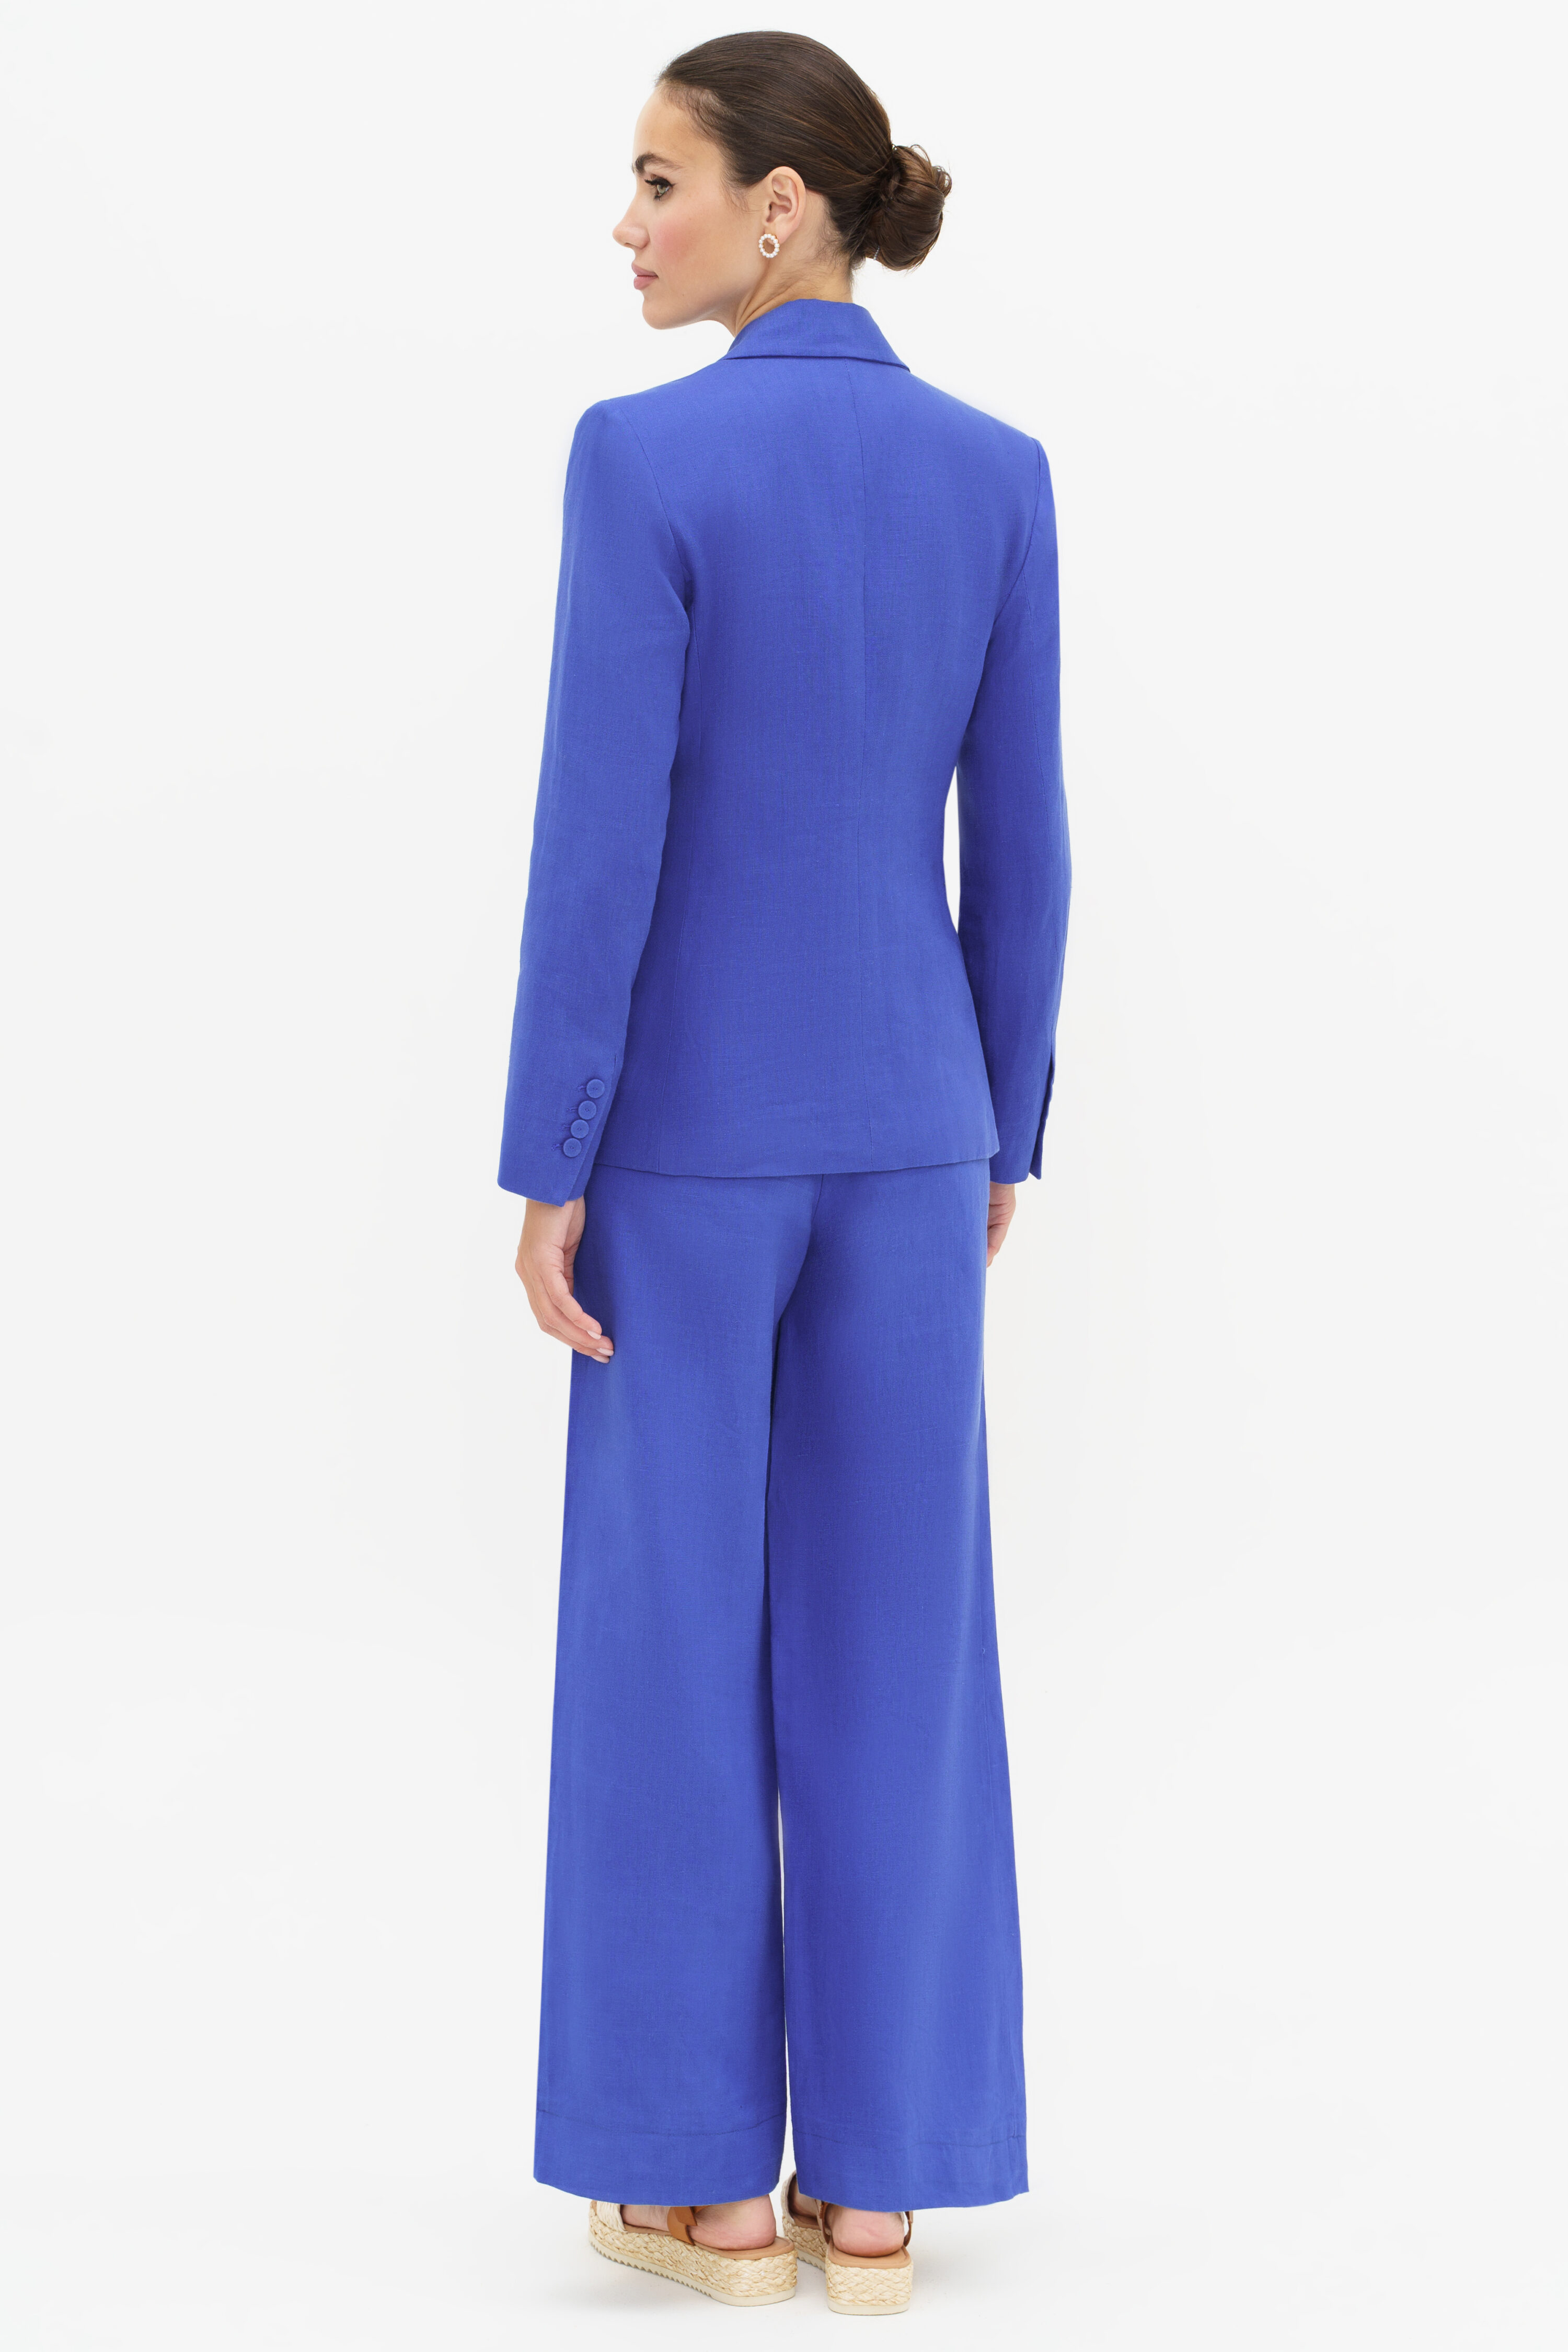 Купить костюм URS 24-340-1 женский льняной синий